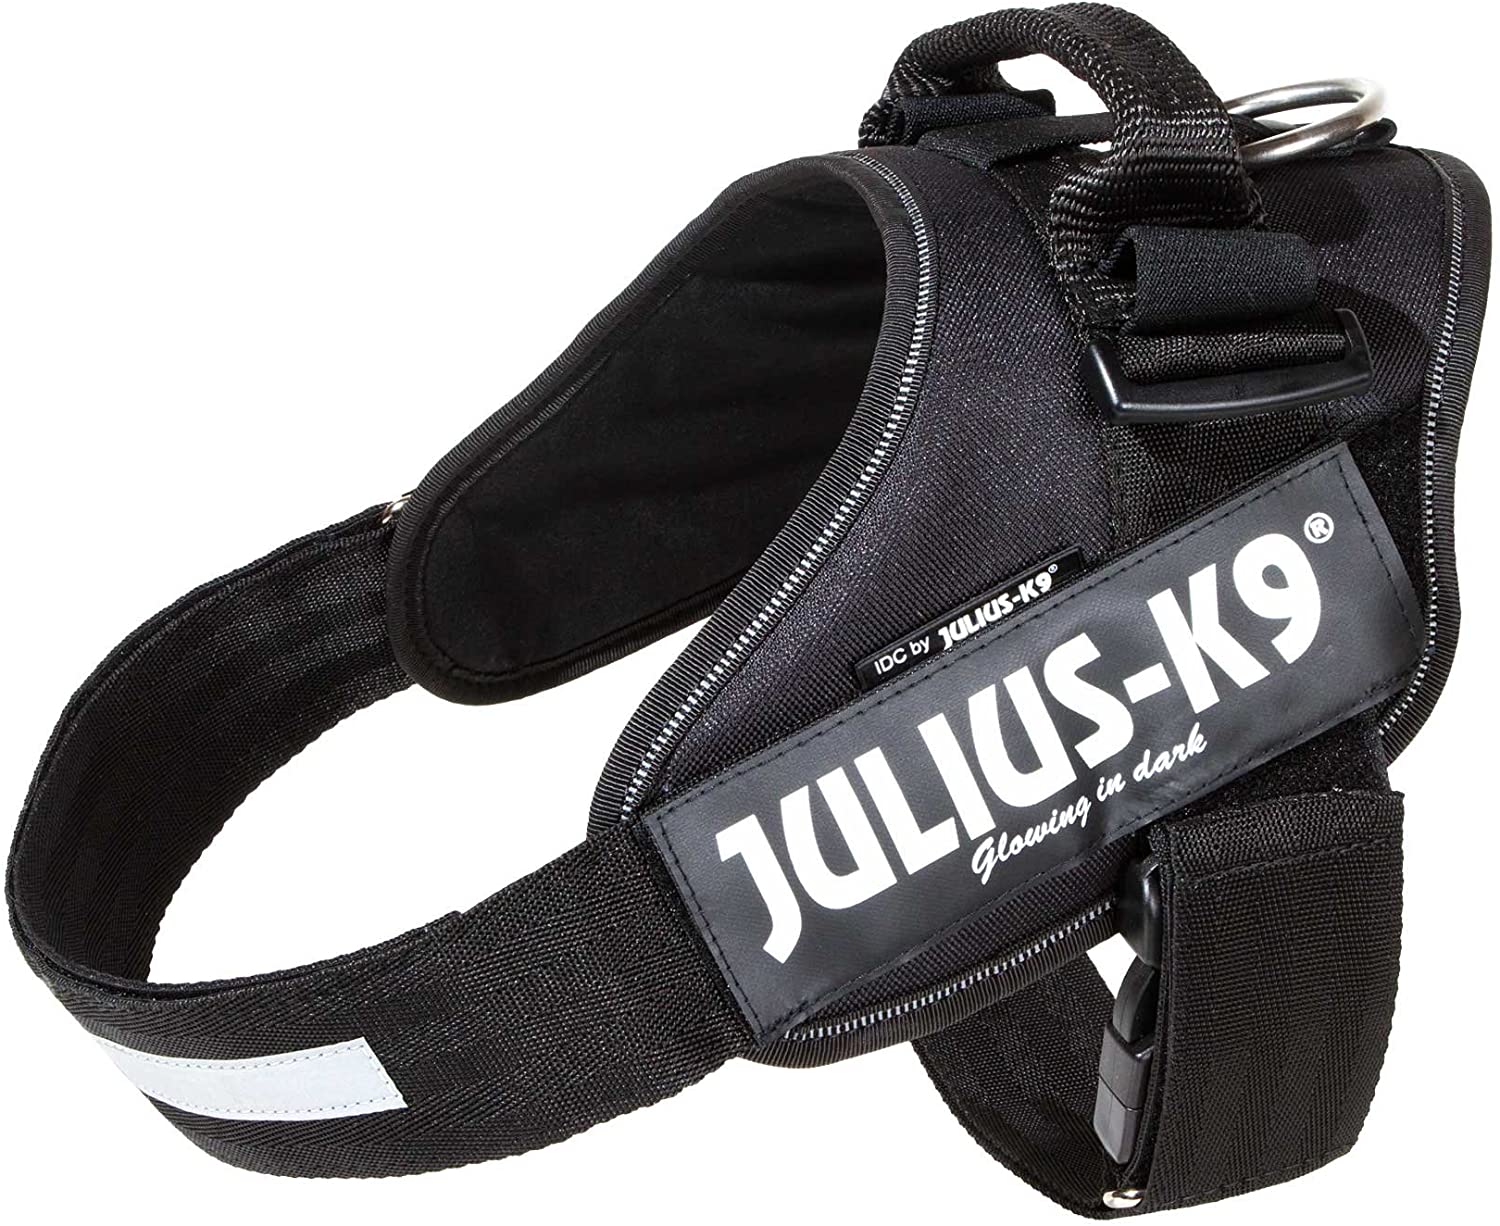  Julius-K9 16IDC-P2+ IDC Power Harness con la Cerradura de Seguridad, Tamaño 2, Negro 